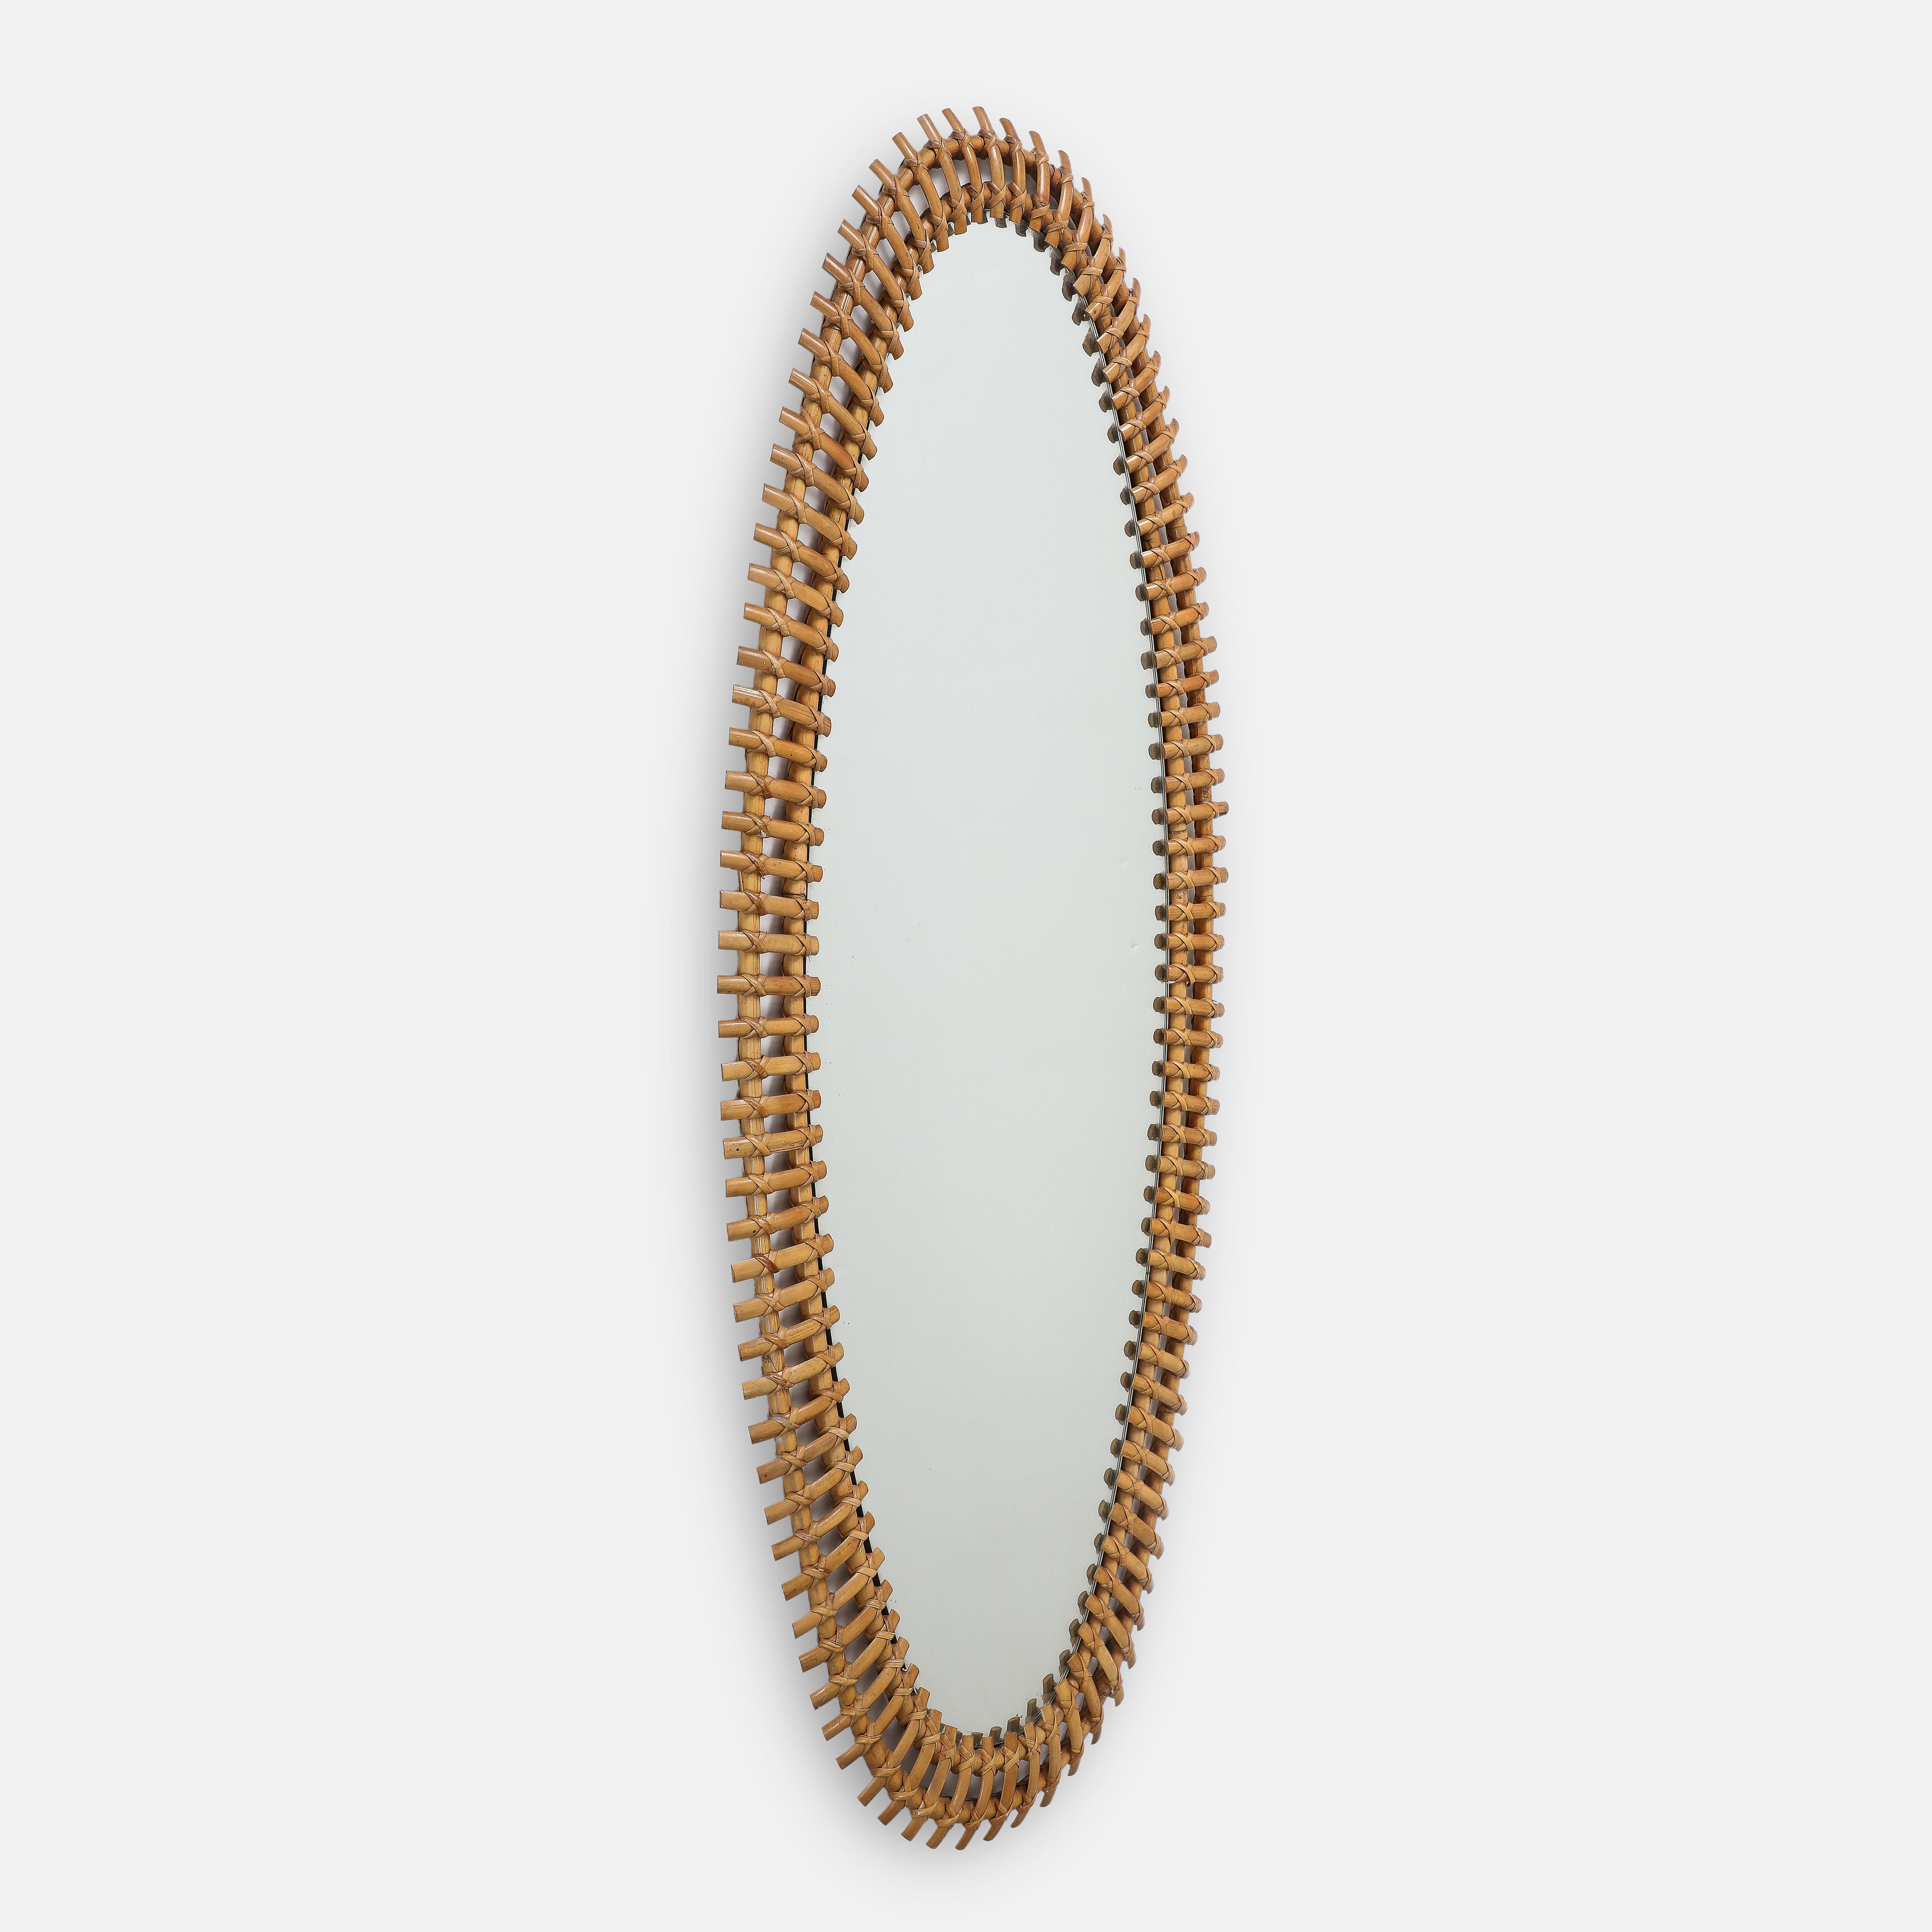 Bonacina seltener großformatiger ovaler Spiegel mit leicht geschwungenen Bambusteilen, handgeflochten auf einem Rahmen aus doppelten Bambusstäben mit originalem Spiegelglas. Dieser monumentale Spiegel besticht durch seine Größe und sein elegantes,